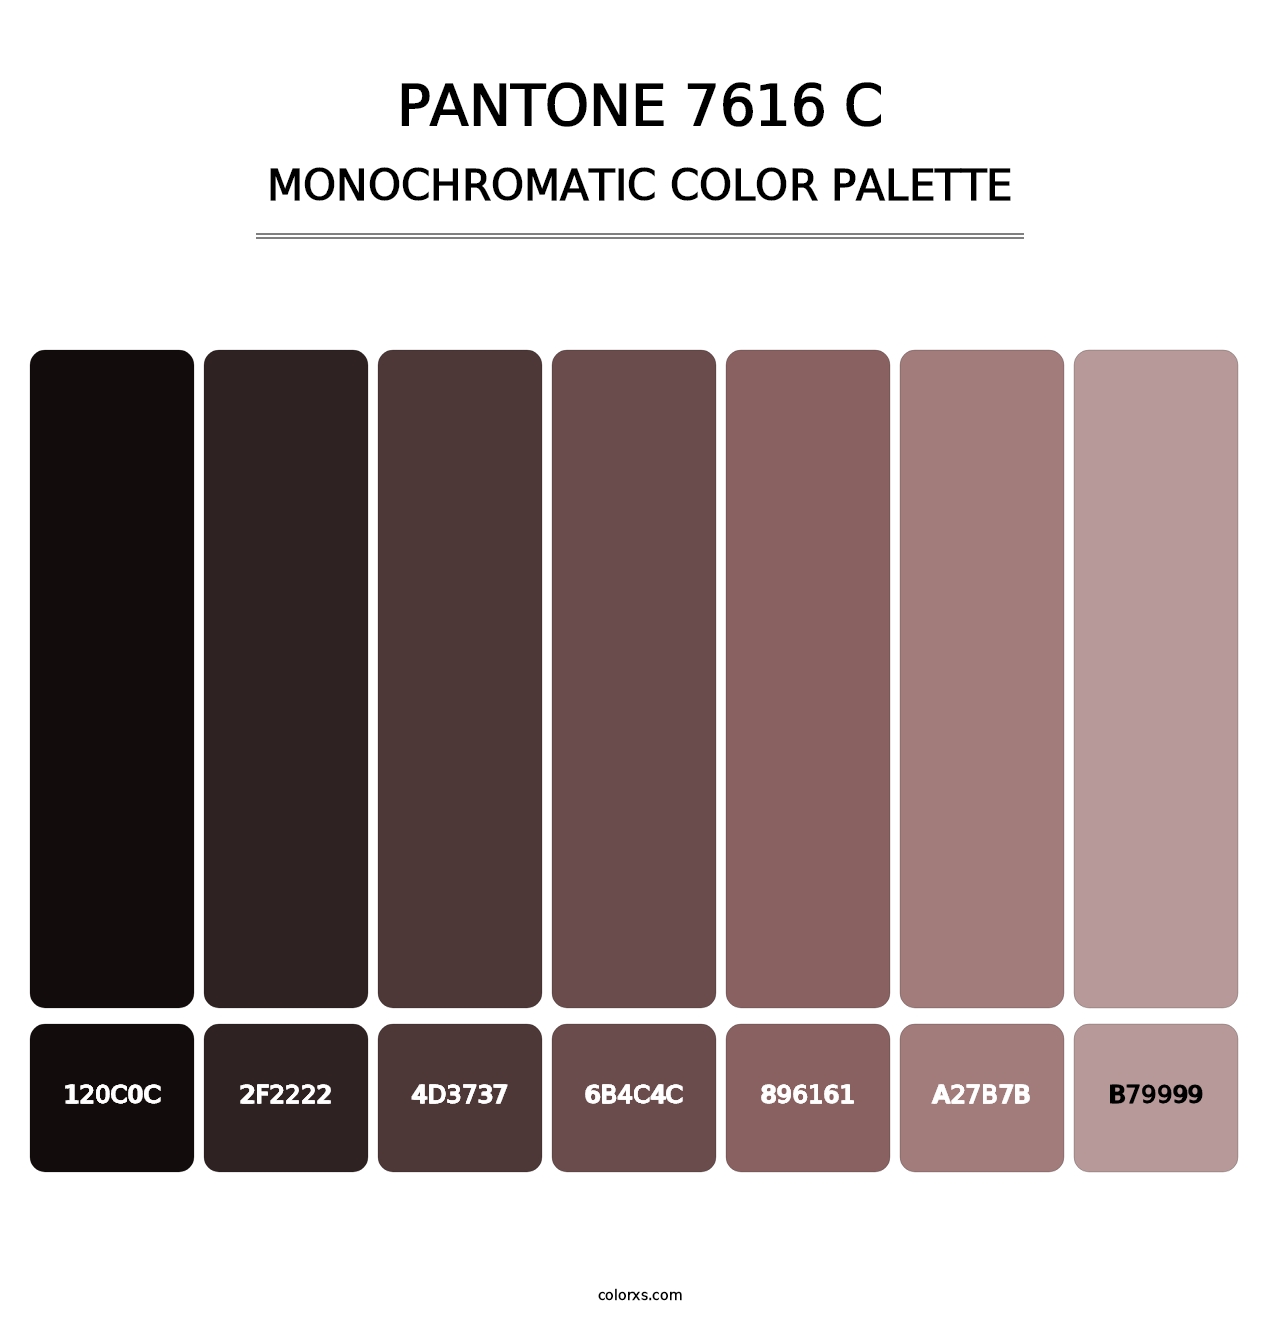 PANTONE 7616 C - Monochromatic Color Palette